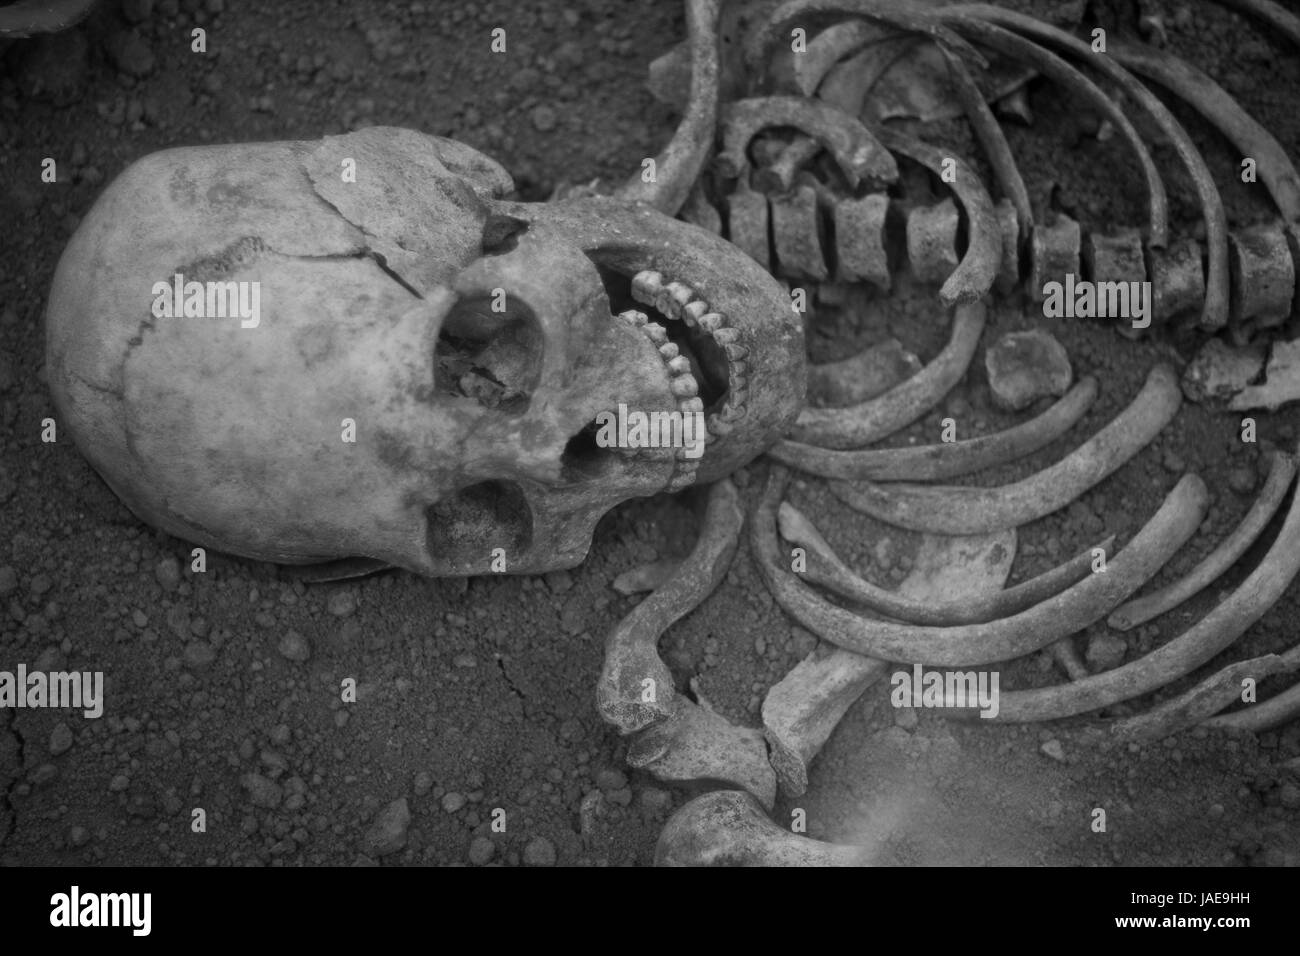 Des fouilles archéologiques d'une ancienne de l'homo sapiens l'homme de Neandertal raisonnable et squelette os crâne humain Banque D'Images